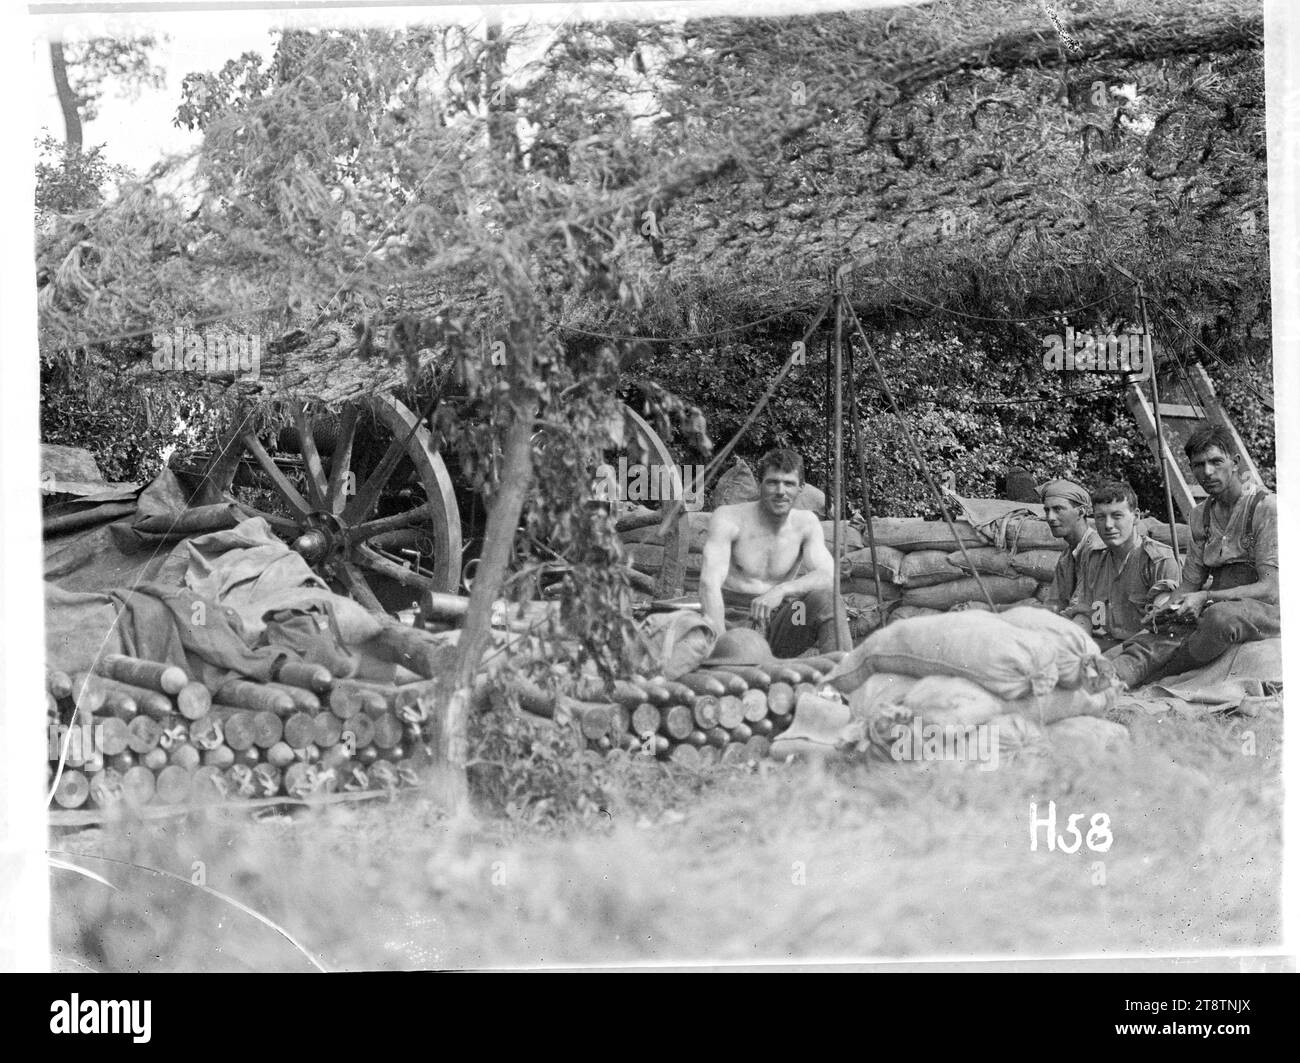 Un canon néo-zélandais avec son équipage pendant la bataille de Messines, Un canon d'artillerie néo-zélandais camouflé dans un emplacement à la bataille de Messines pendant la première Guerre mondiale Le pistolet est en grande partie caché sous les arbres et les filets. L'équipage est assis à proximité. Des obus d'artillerie empilés sont visibles. Photographie prise le 8 juin 1917 Banque D'Images